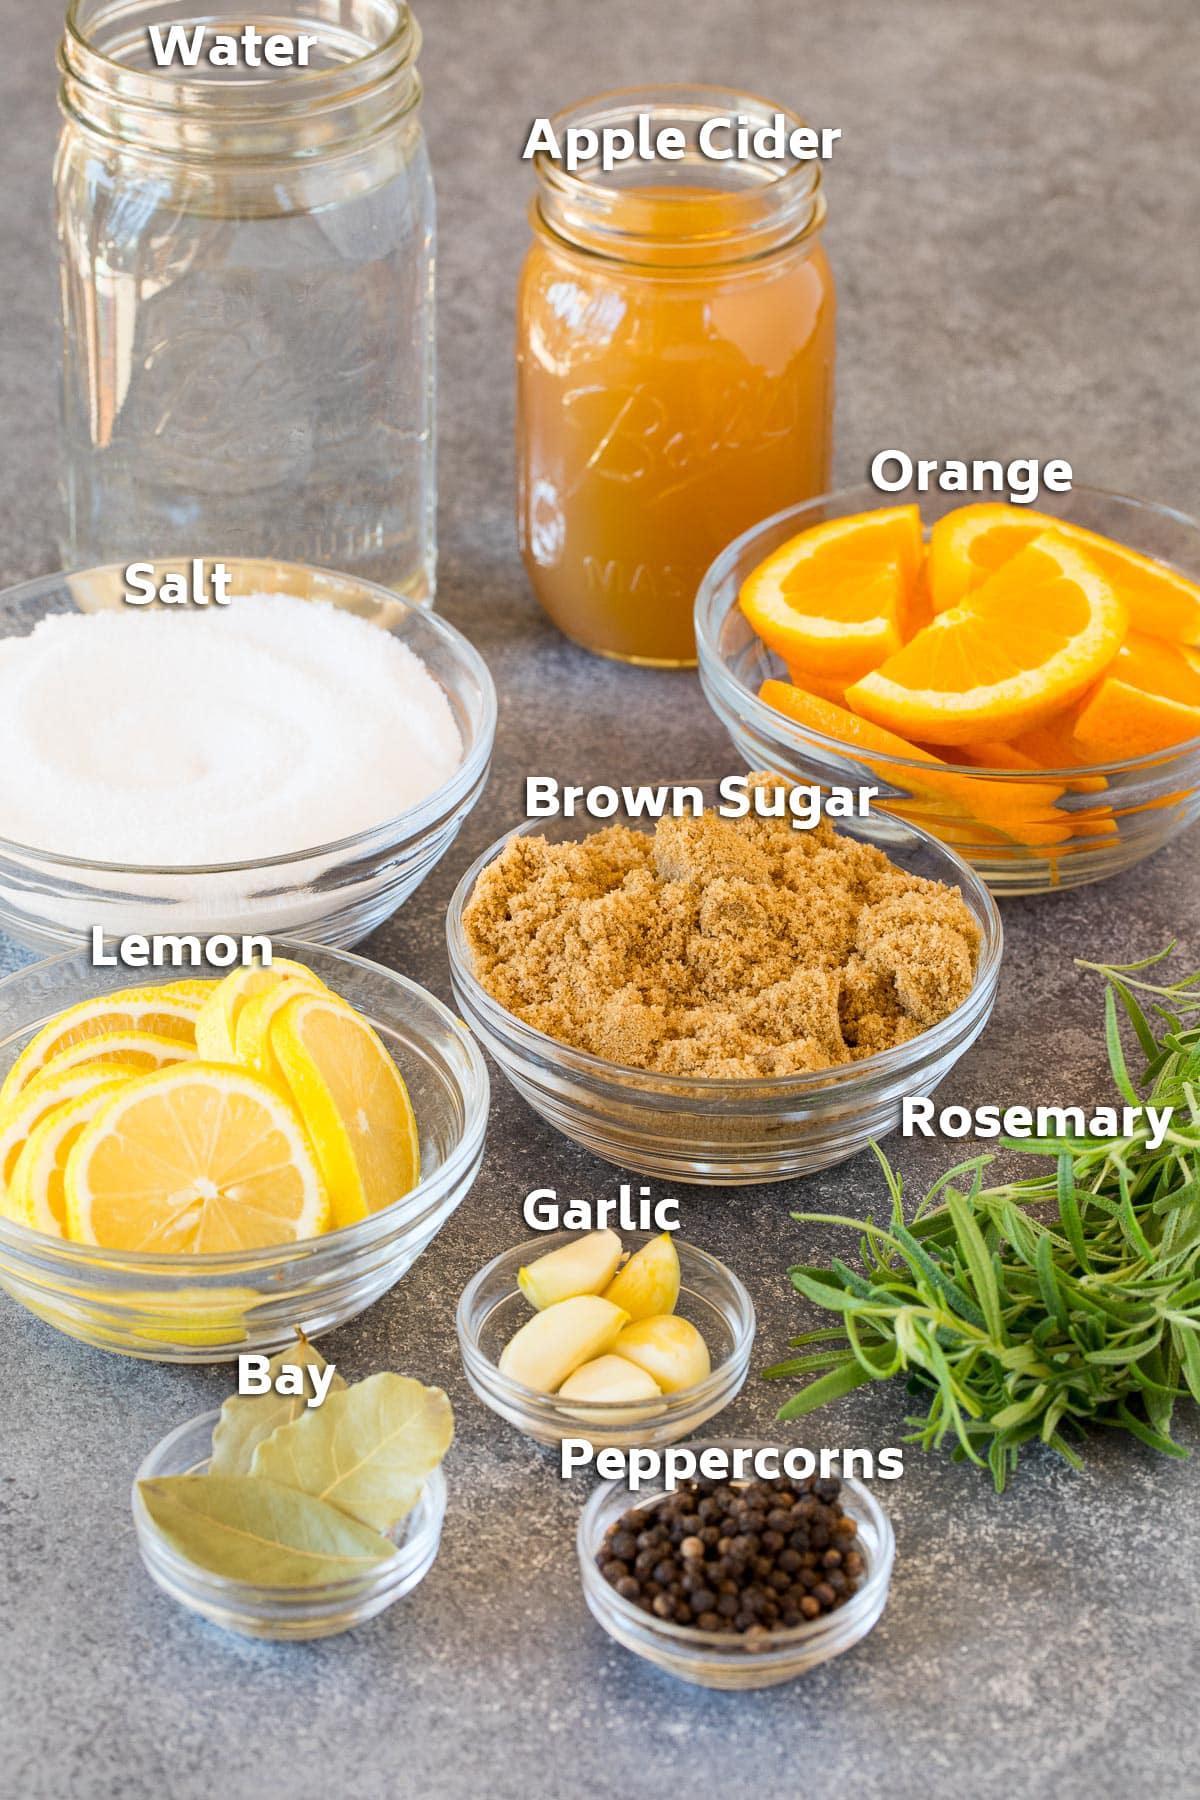 Ingredients including apple cider, salt, sugar, herbs and seasonings.